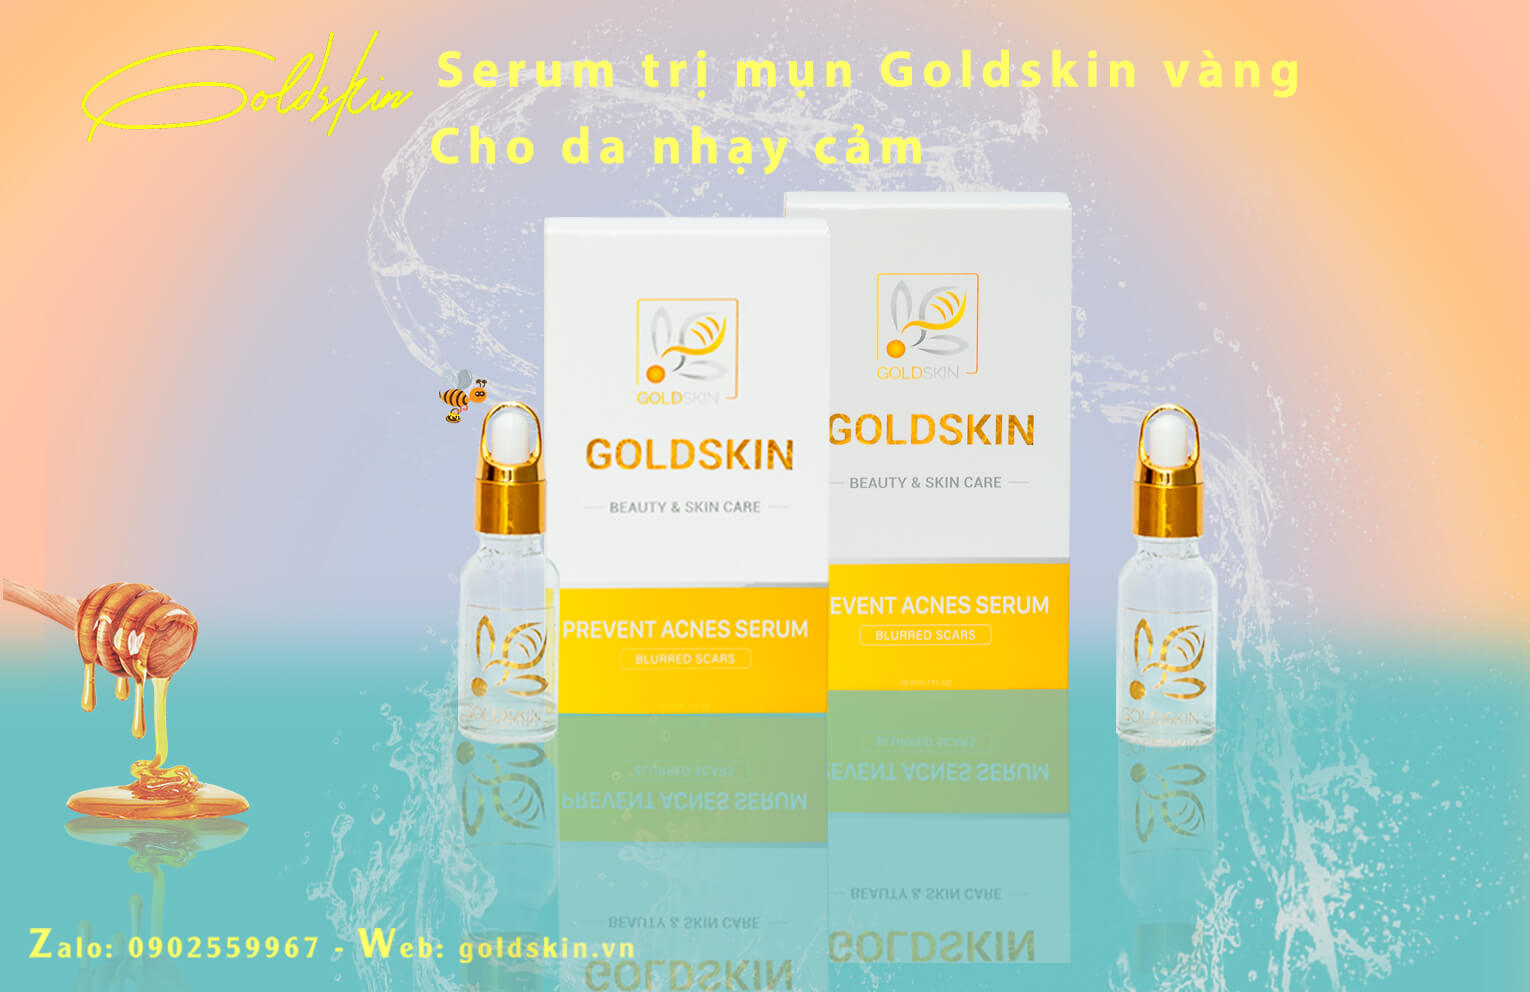 Serum trị mụn Goldskin được chiết xuất hoàn toàn từ thiên nhiên với thành phần chính là Nọc Ong